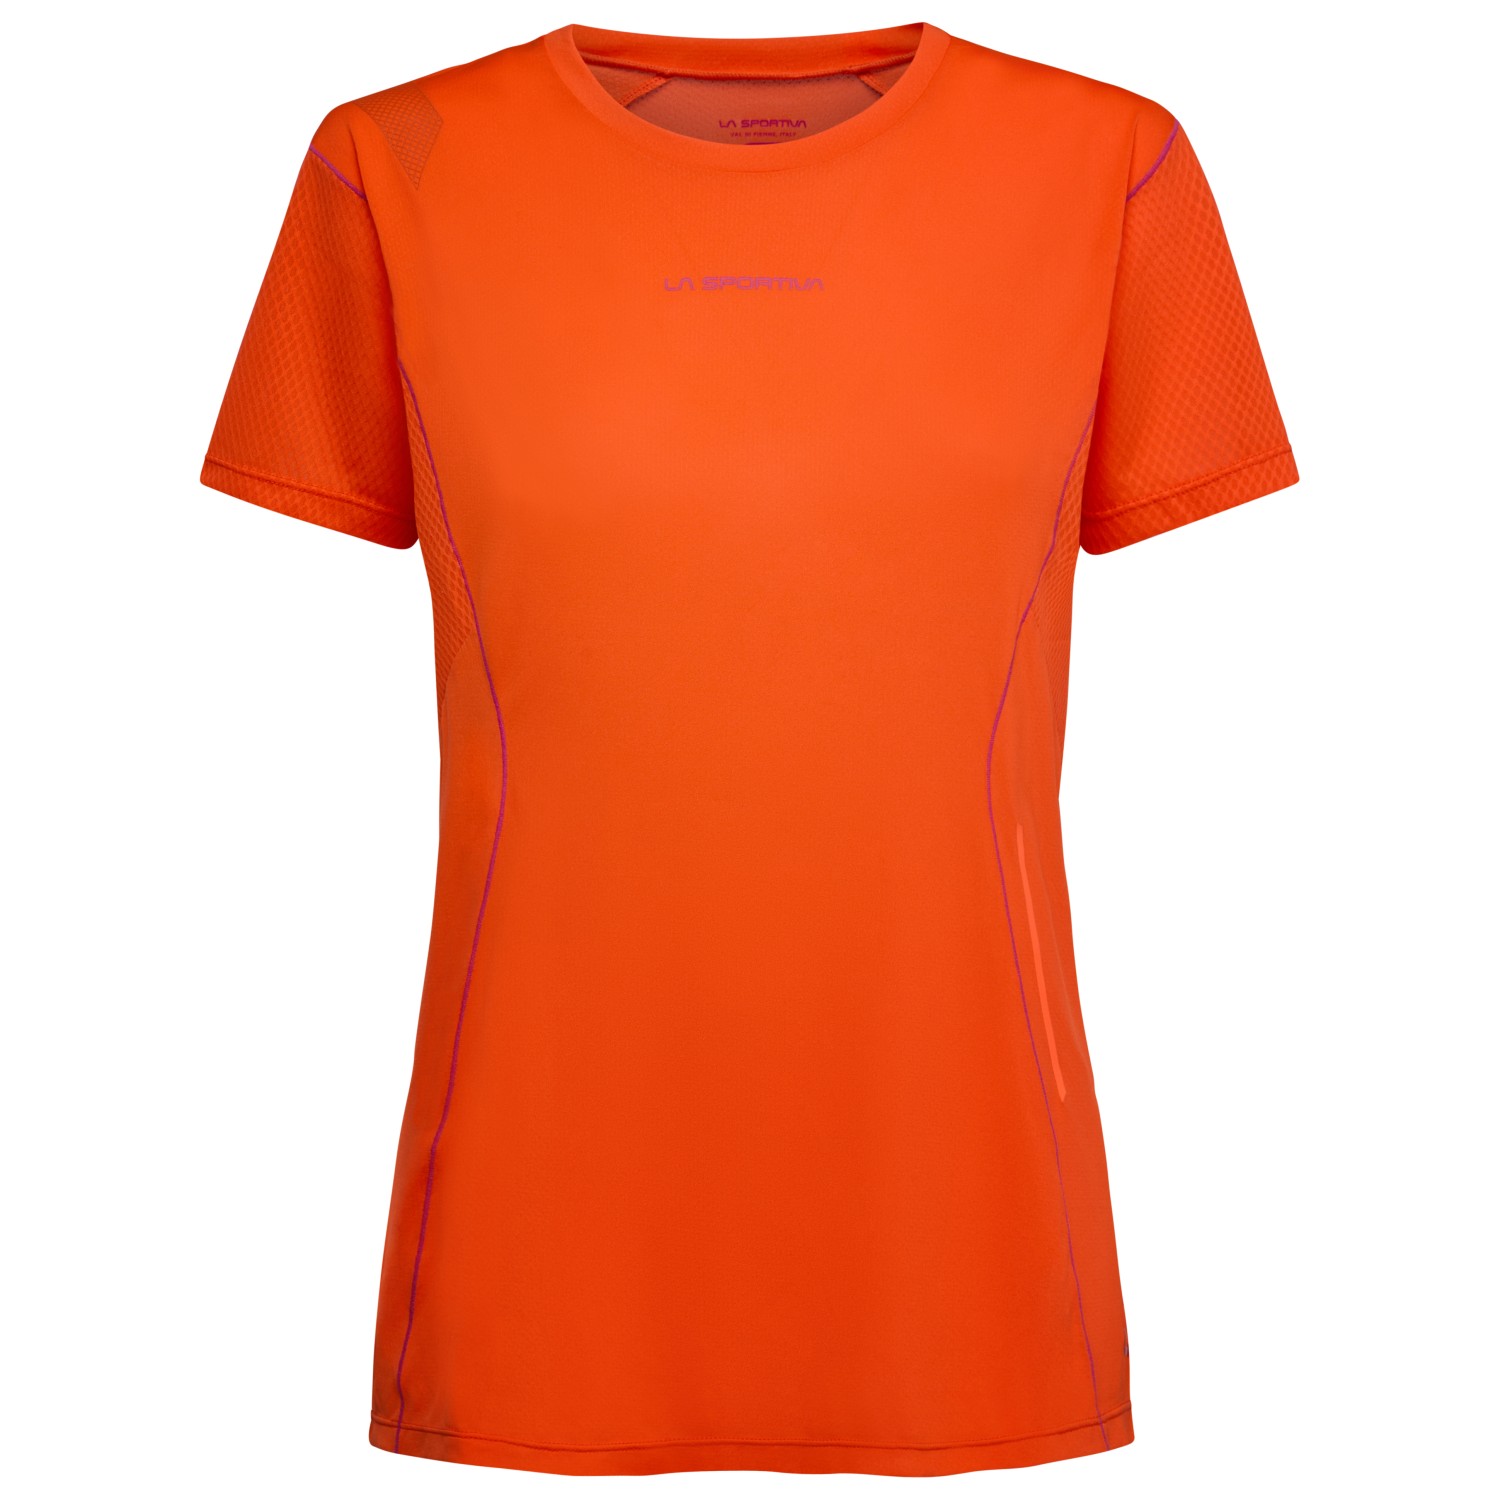 Беговая рубашка La Sportiva Women's Resolute T Shirt, цвет Cherry Tomato/Springtime